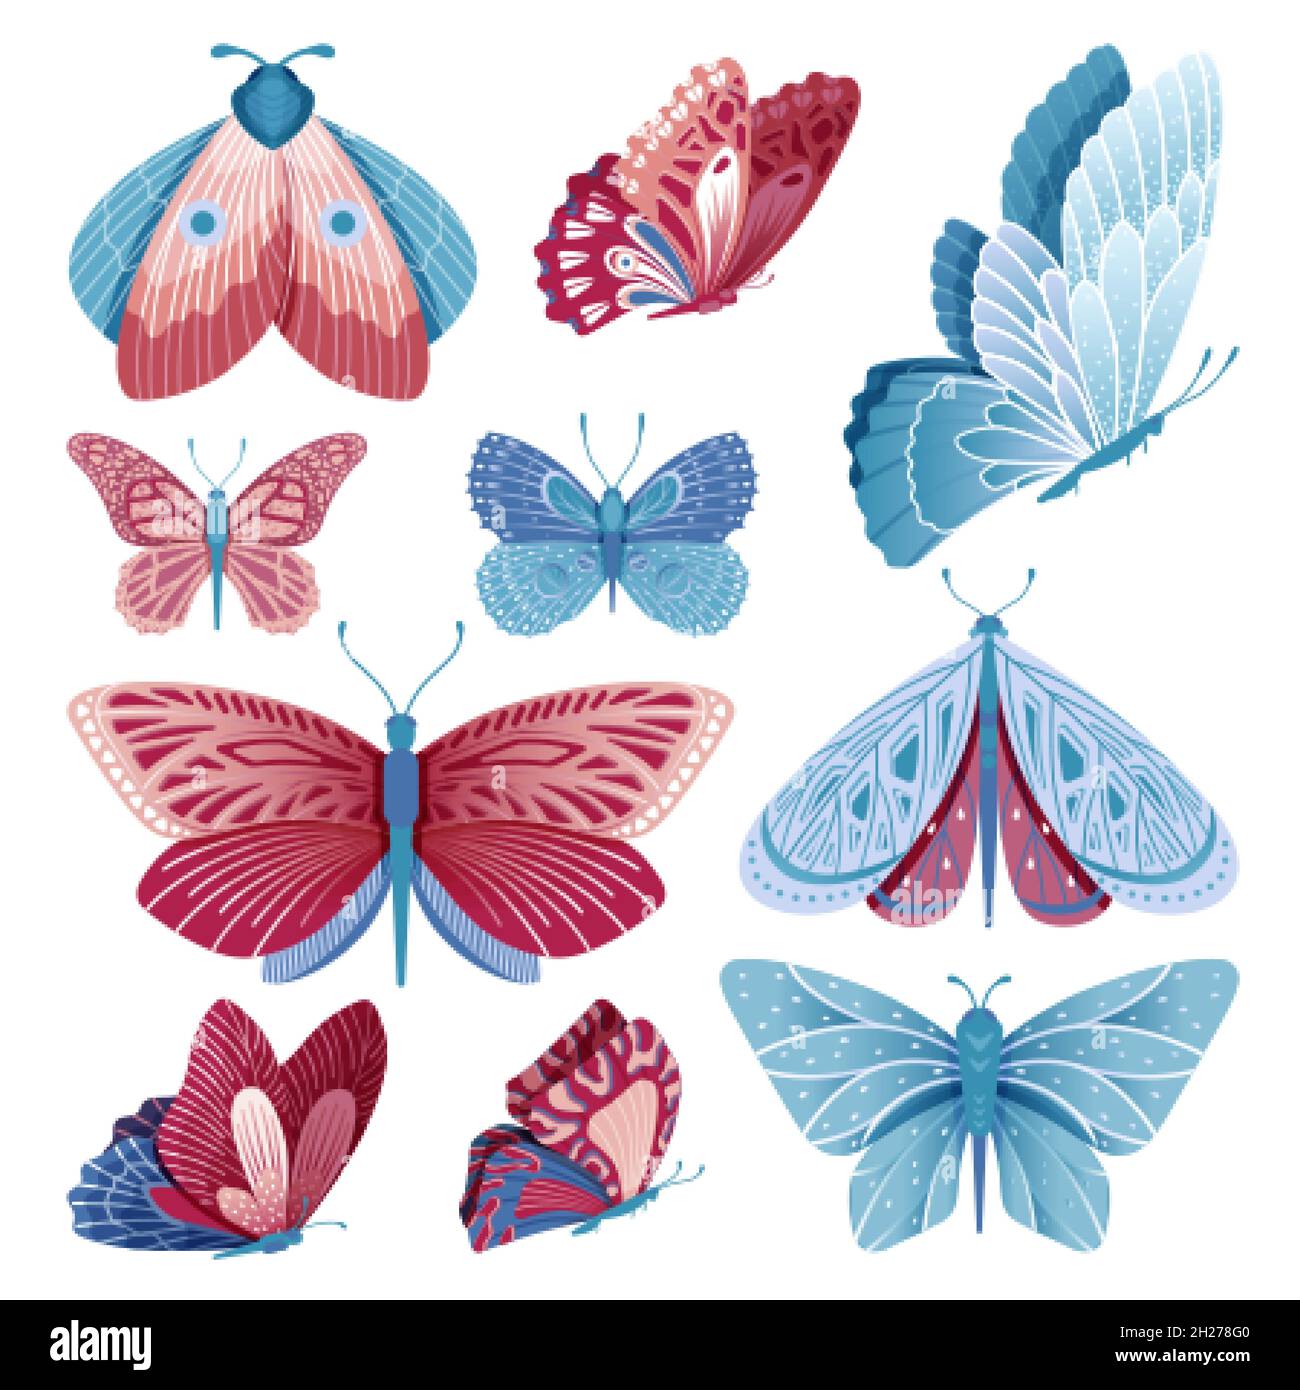 Collezione di farfalle. Farfalla di volo, isolato multicolore e insetto blu. Vintage Moth, elementi decorativi artistici. Natura selvaggia vettore swanky Illustrazione Vettoriale